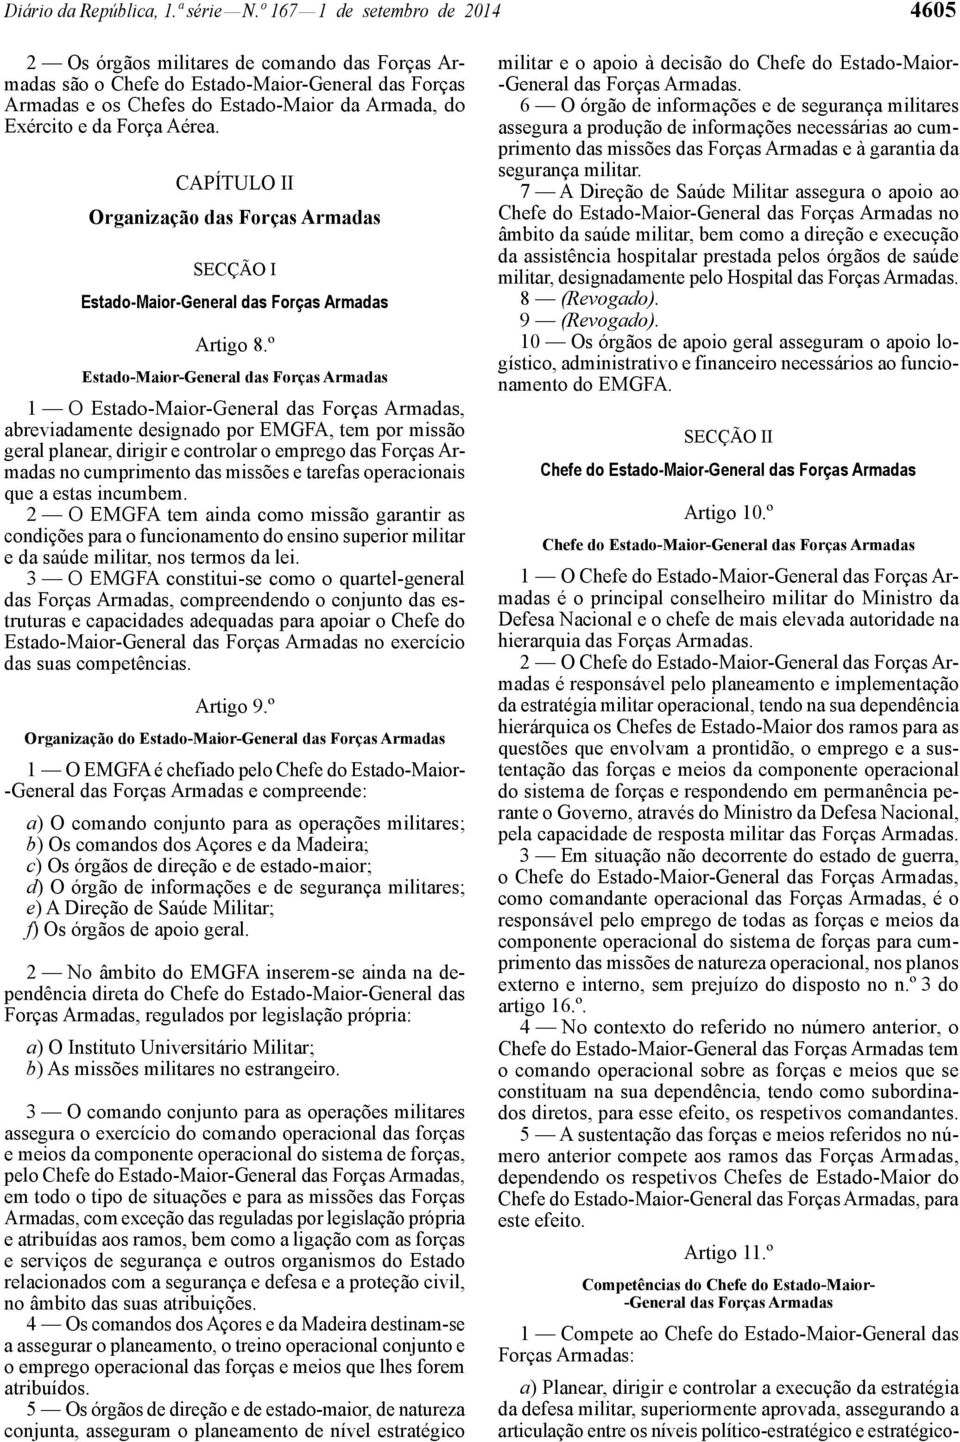 Força Aérea. CAPÍTULO II Organização das Forças Armadas SECÇÃO I Estado-Maior-General das Forças Armadas Artigo 8.